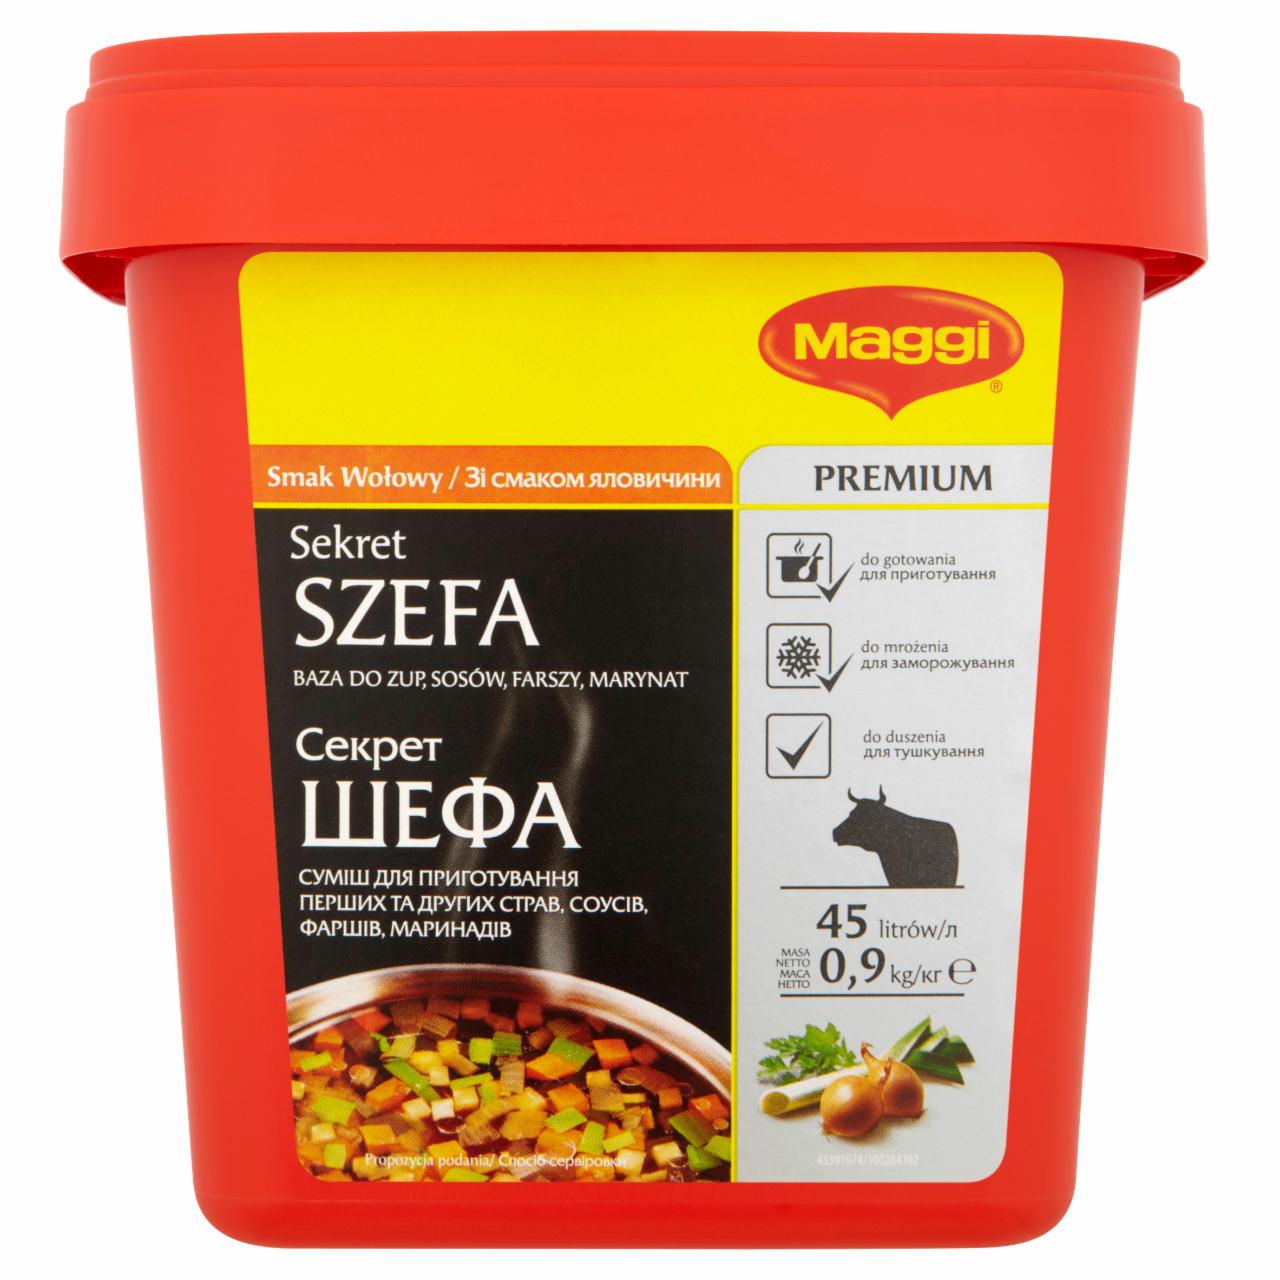 Zdjęcia - Maggi Sekret Szefa smak wołowy Baza do zup sosów farszy marynat 900 g